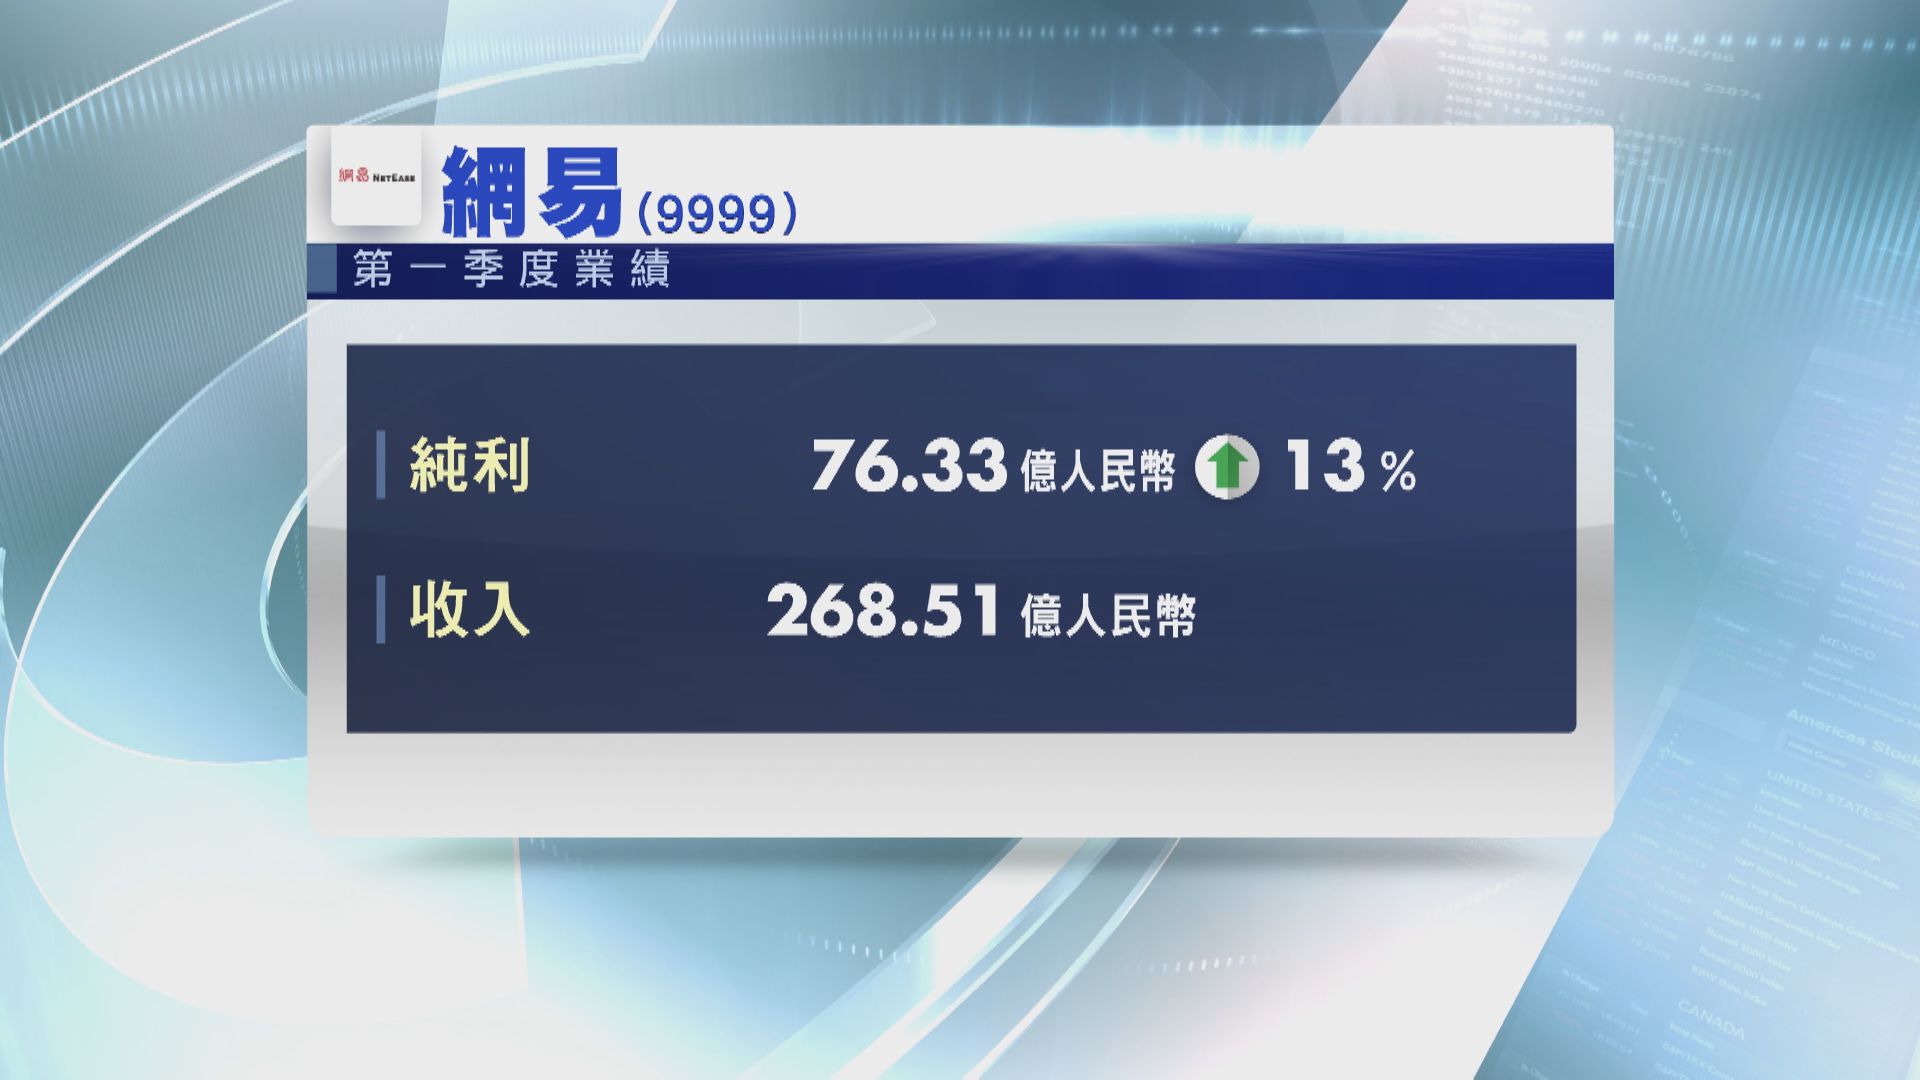 【業績速報】網易首季多賺13% 符預期